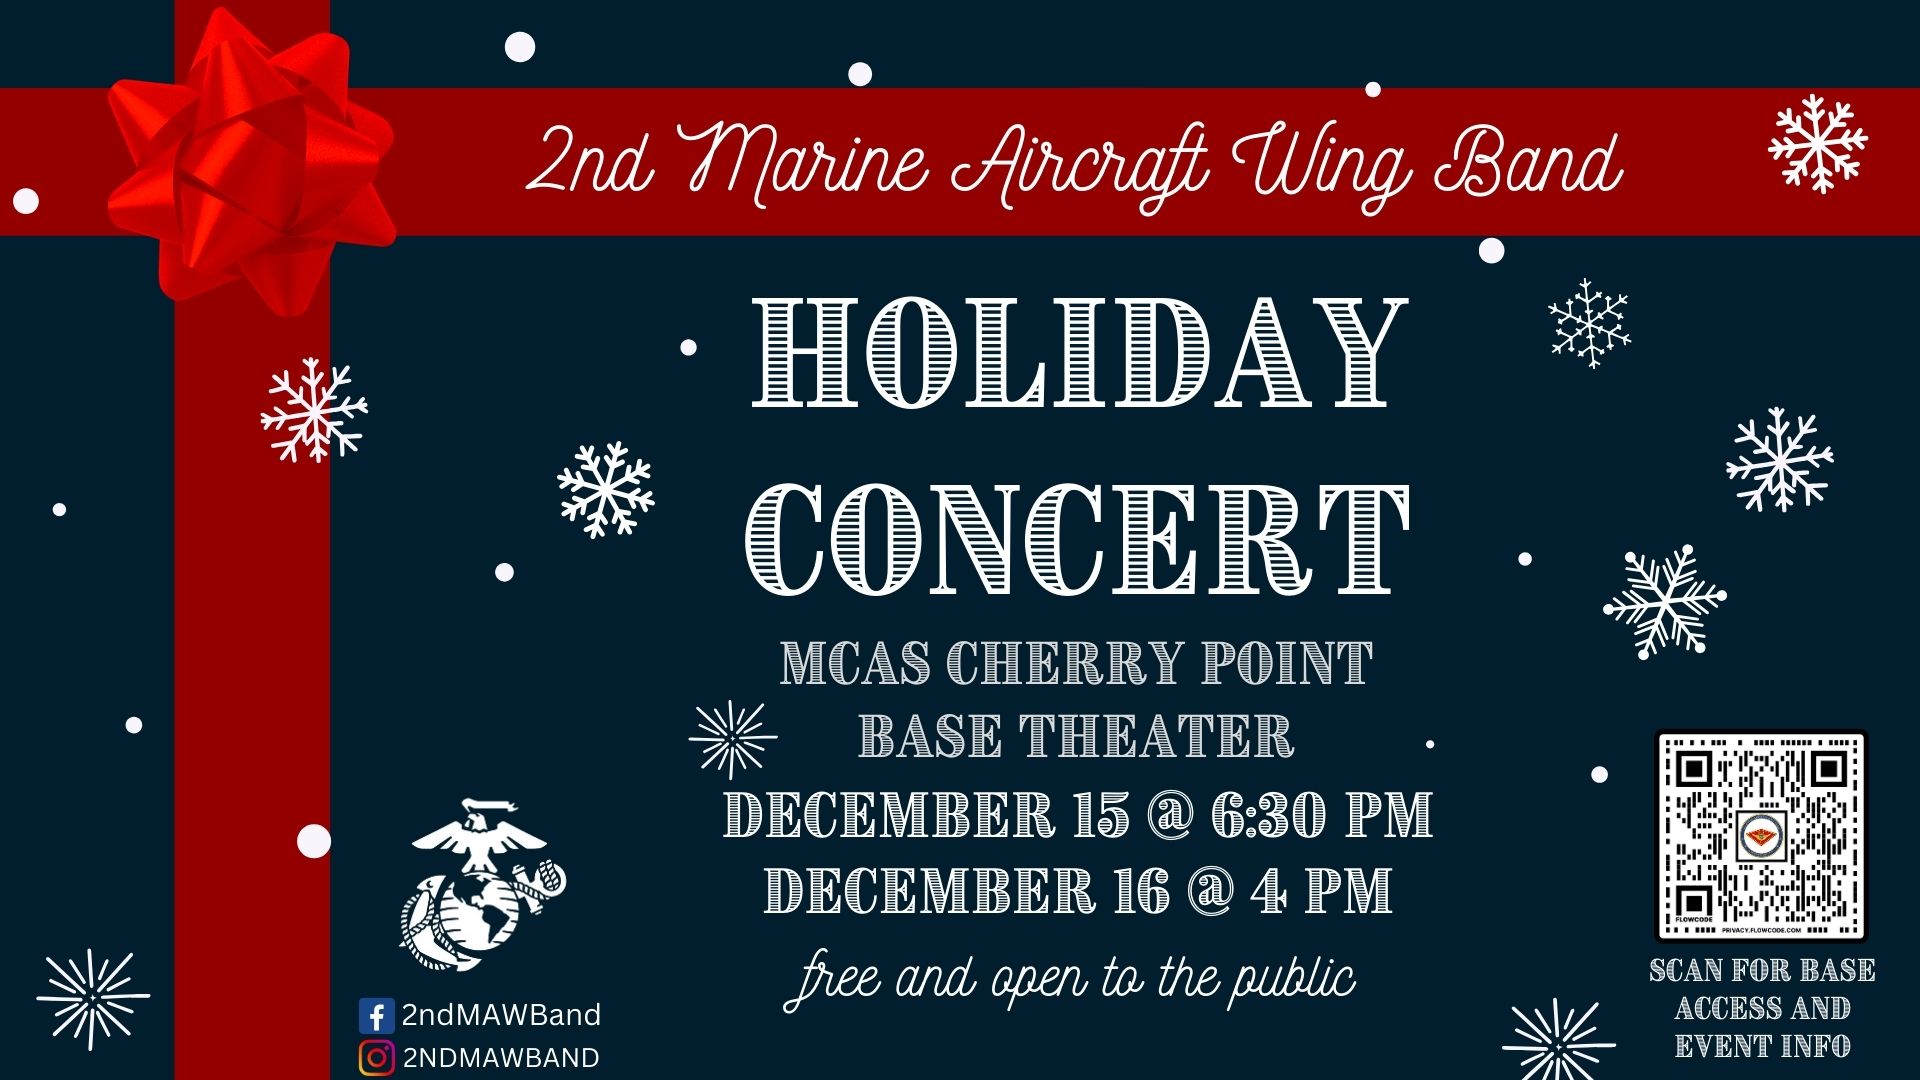 2nd Marine Aircraft Wing Band Holiday Concert